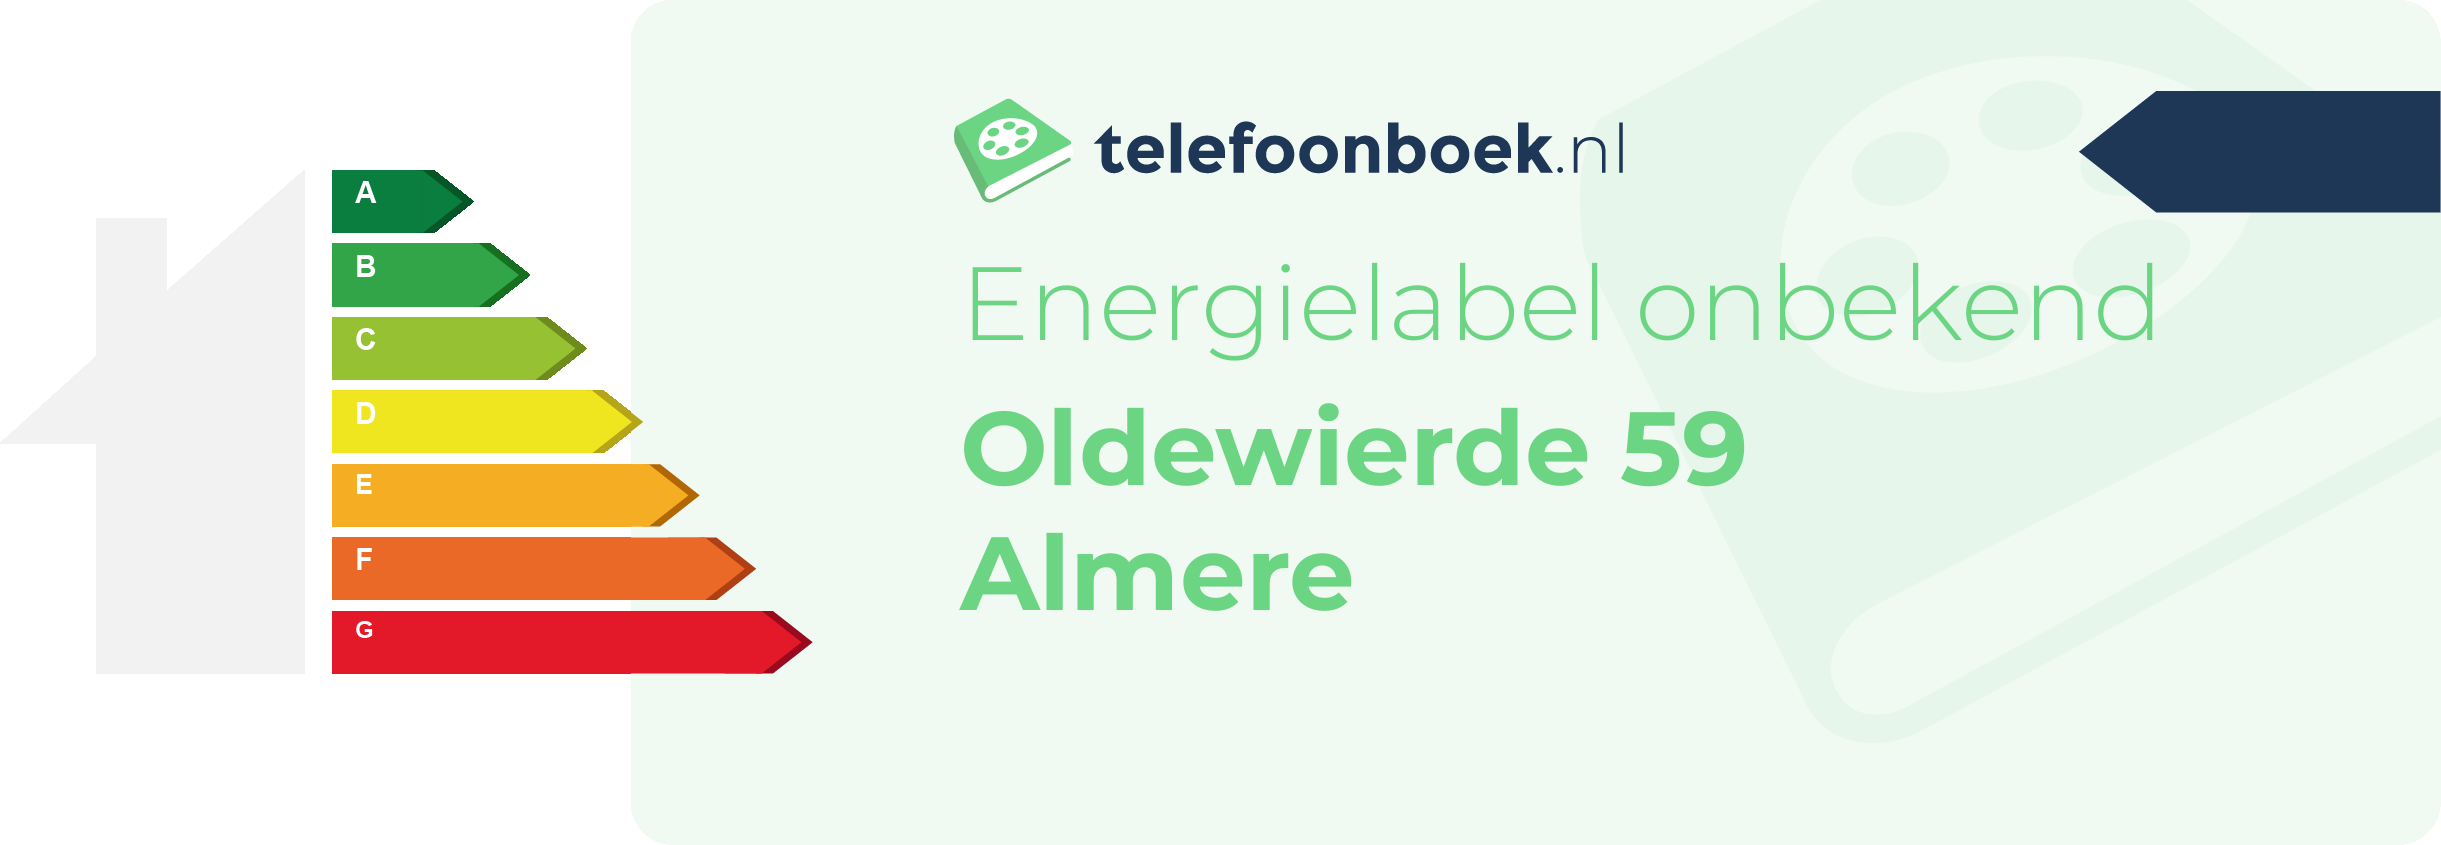 Energielabel Oldewierde 59 Almere